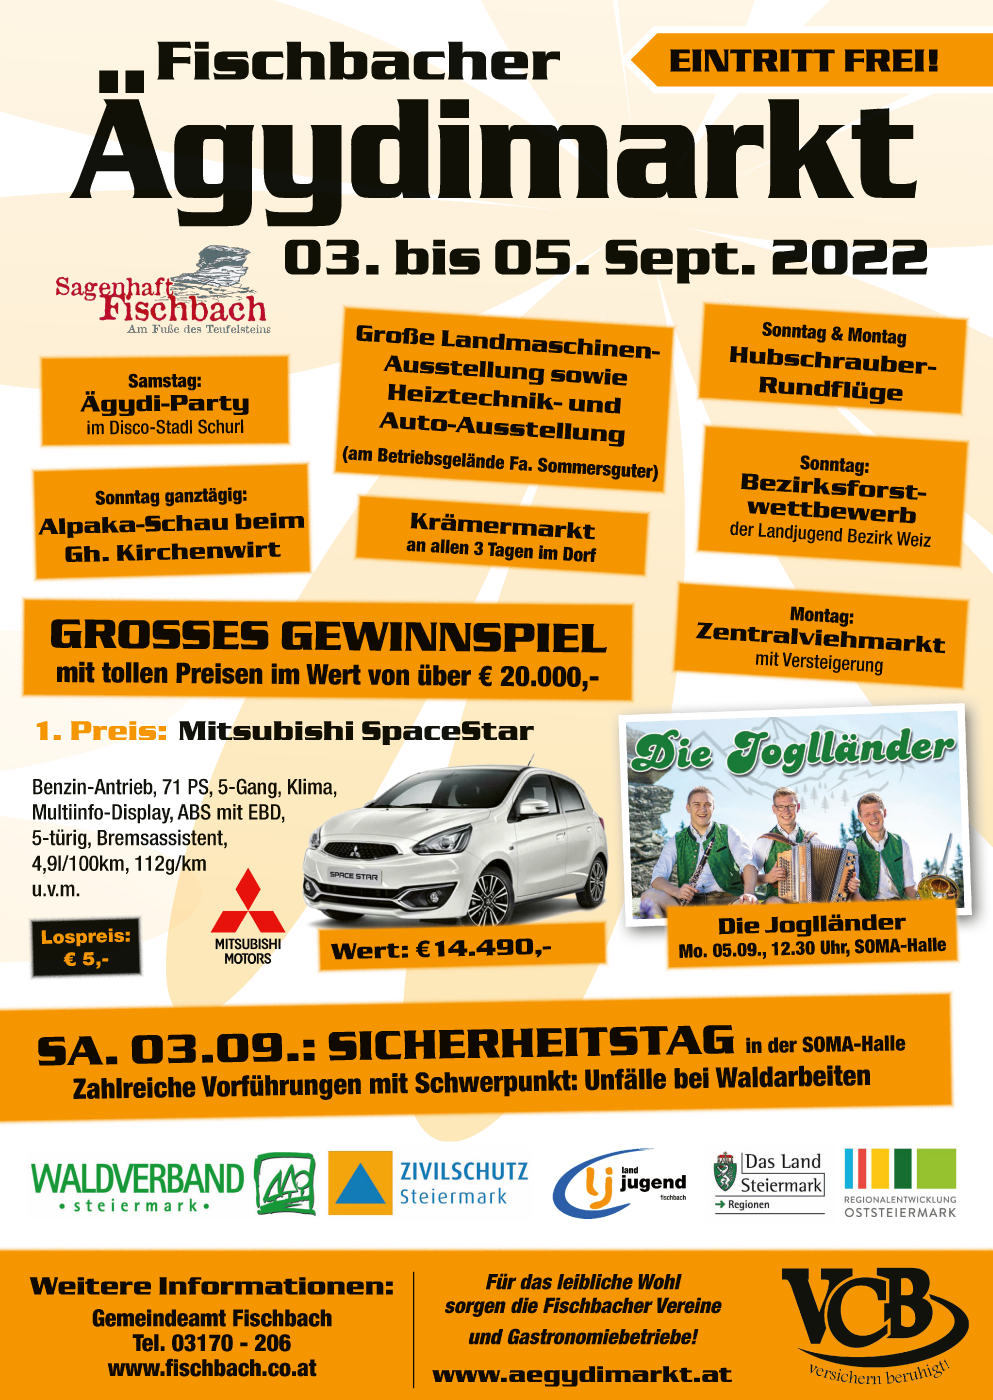 Grillhendl am Sonntag beim  Ägydimarkt 2023 in Fischbach